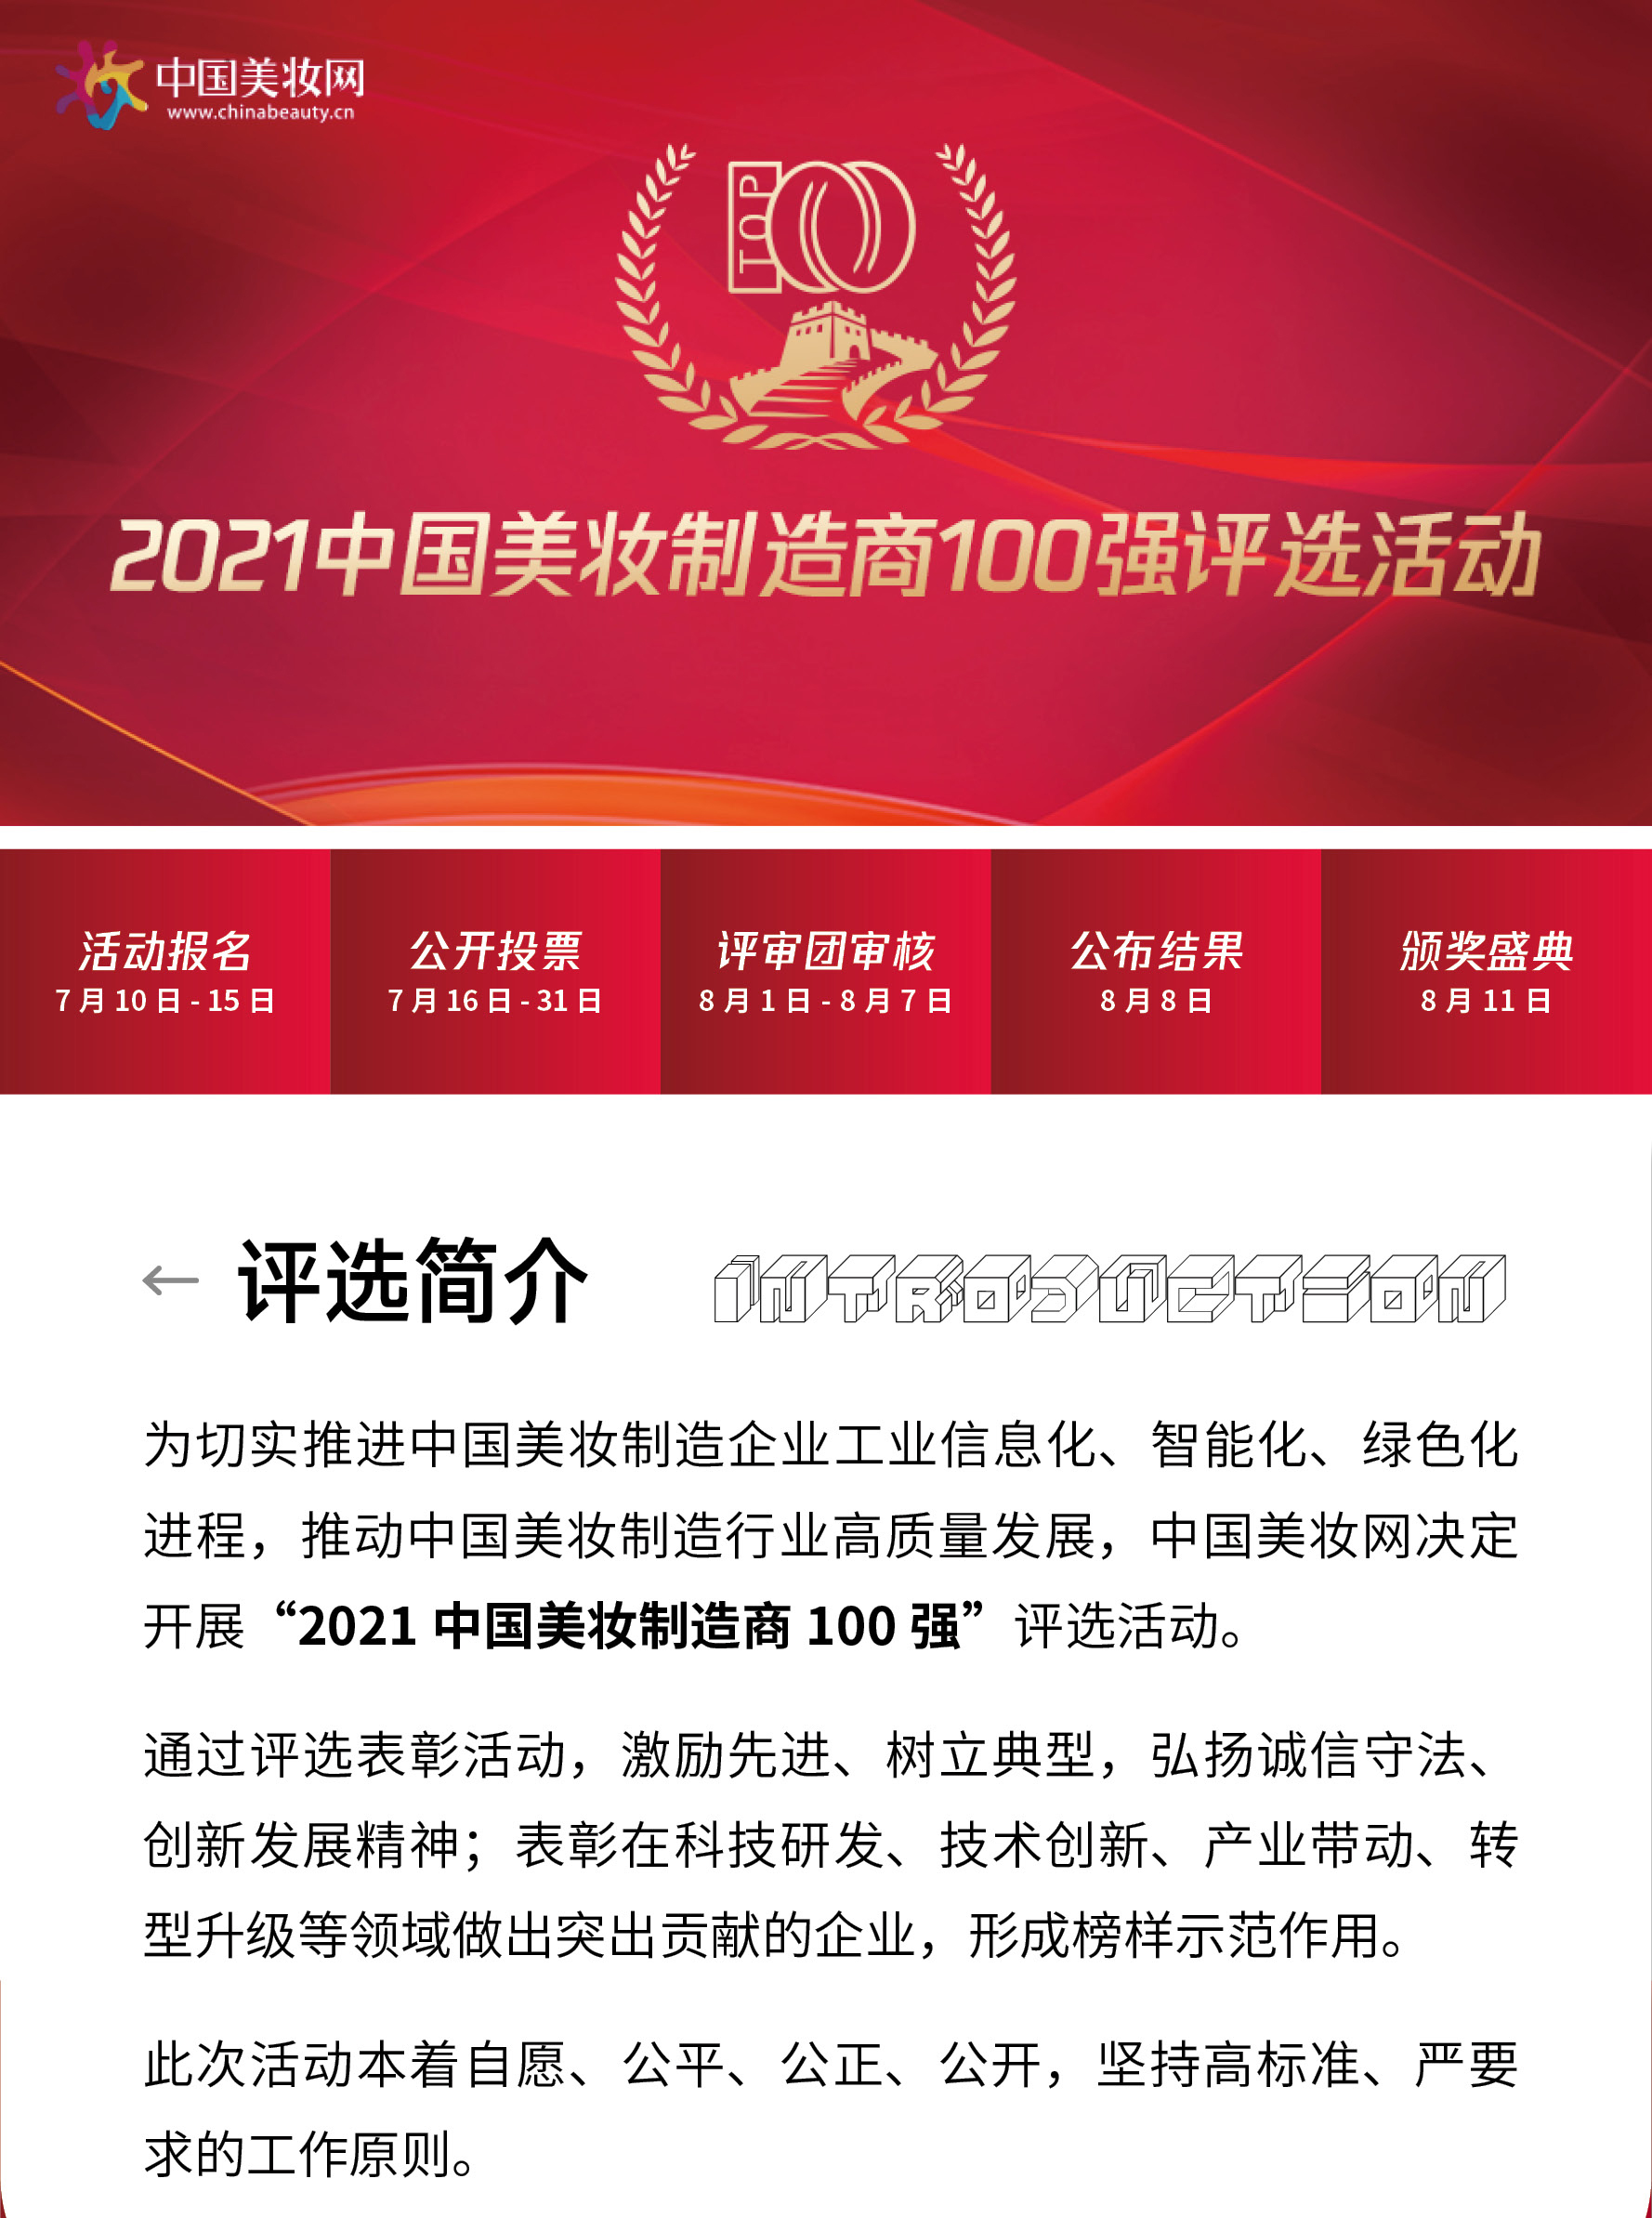 2021中国美妆百强制造企业评选活动长图h52_01.jpg